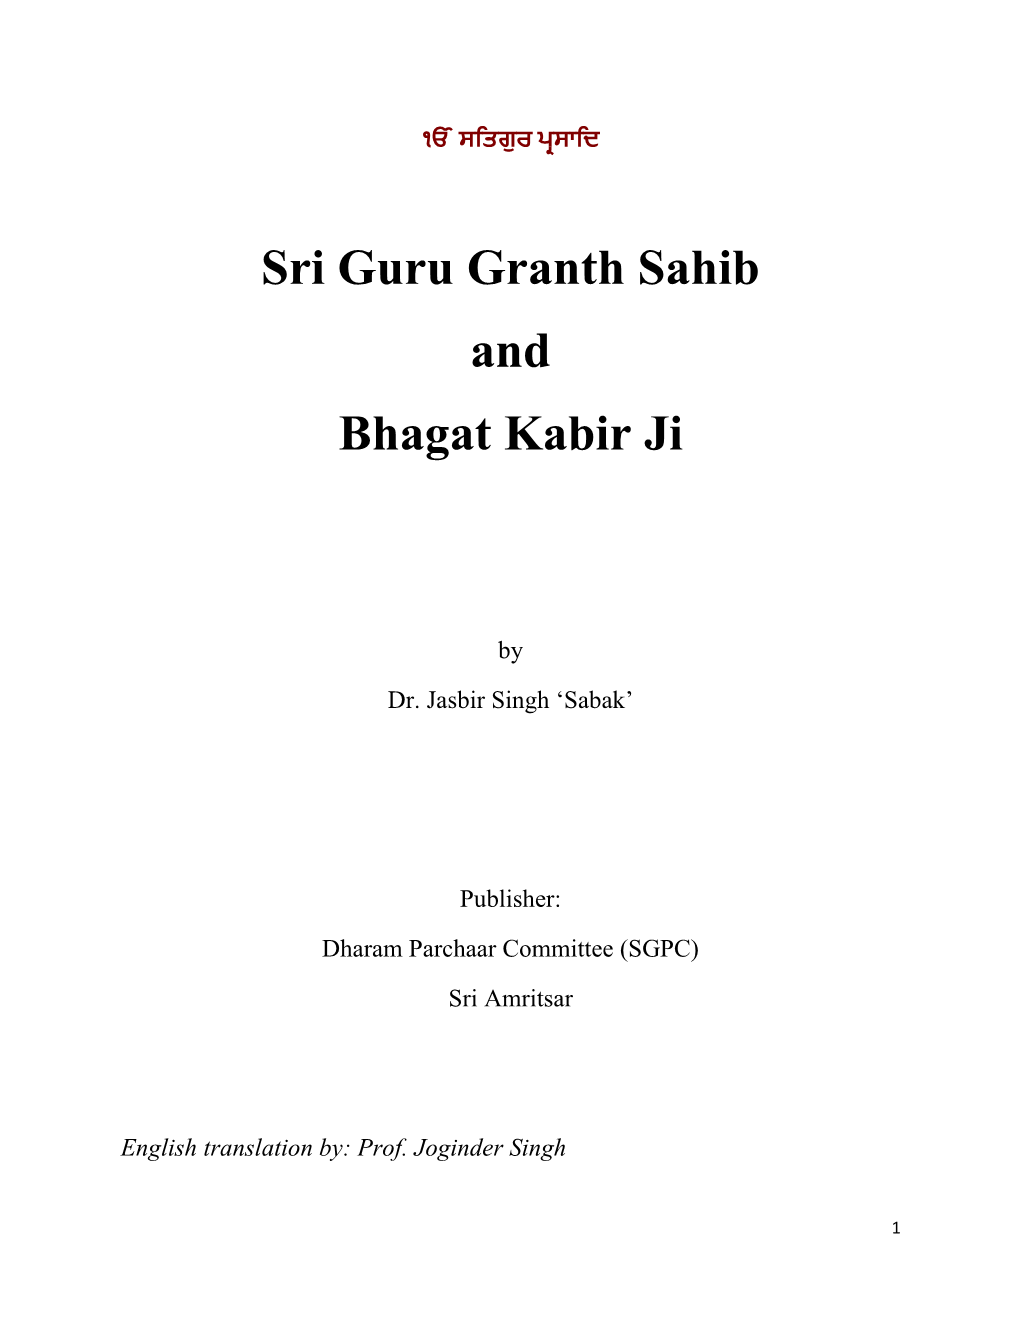 Sri Guru Granth Sahib and Bhagat Kabir Ji